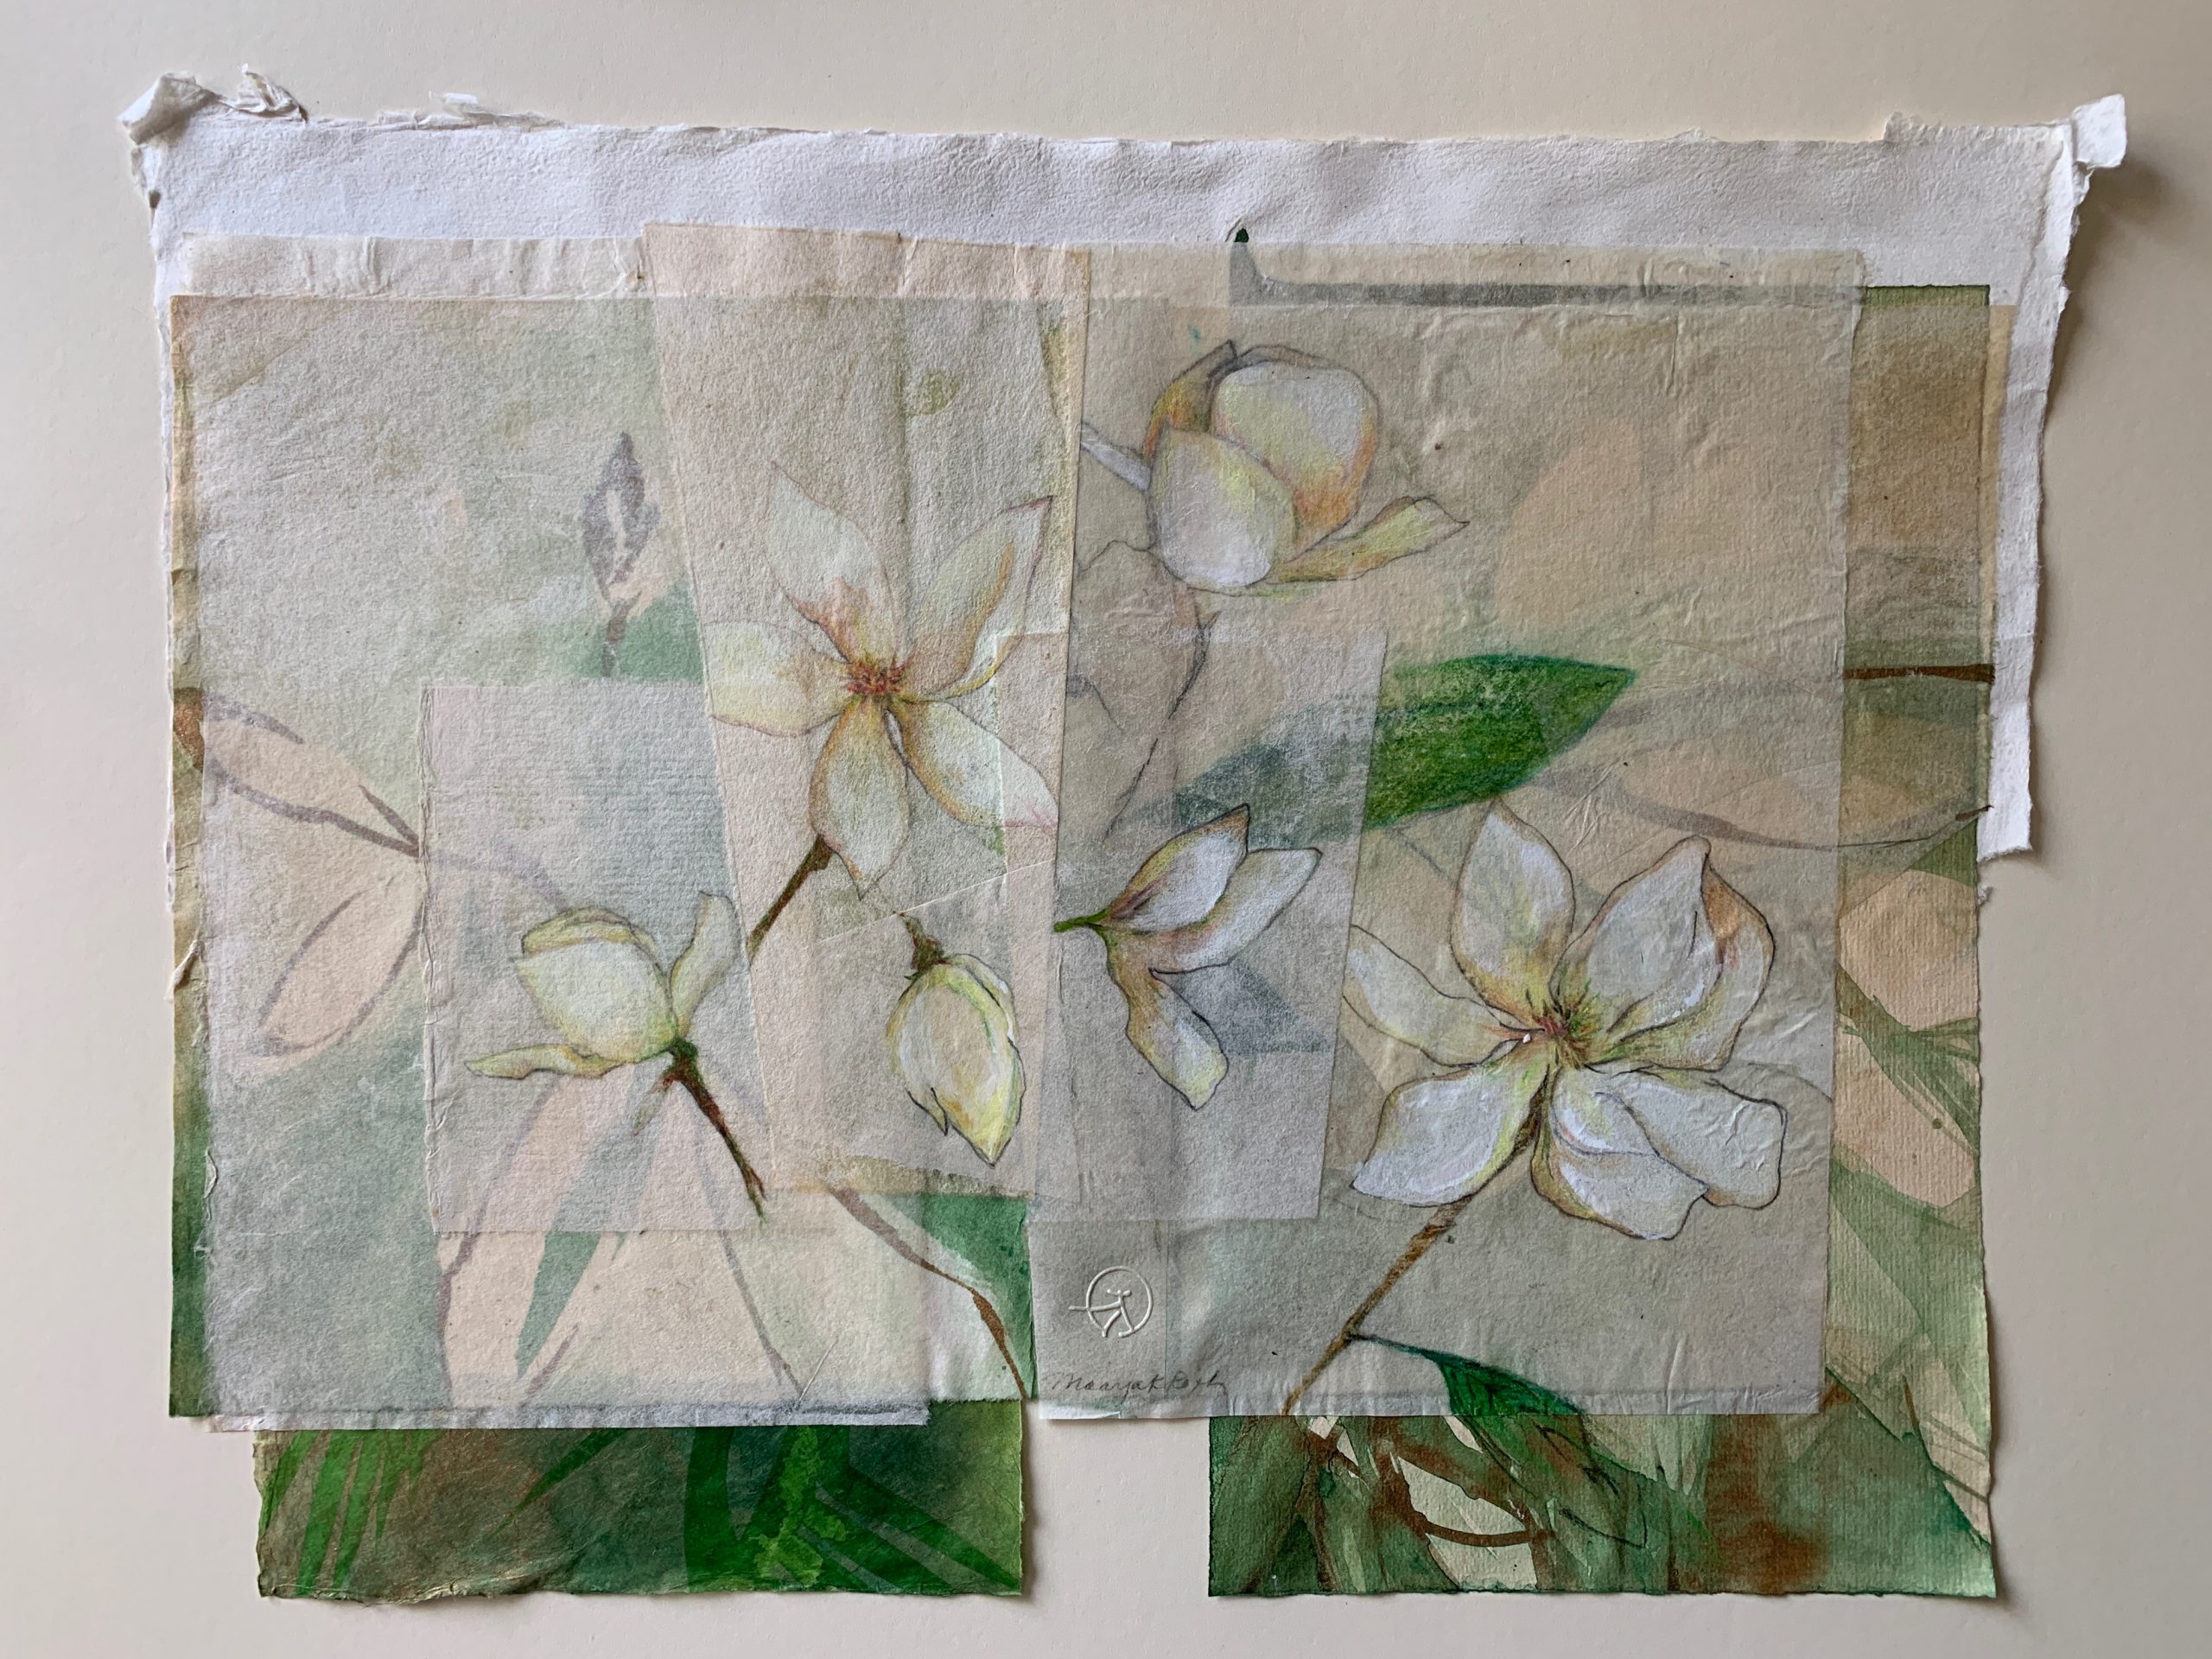 "Magnolia", 13 1/2" x 17", collage